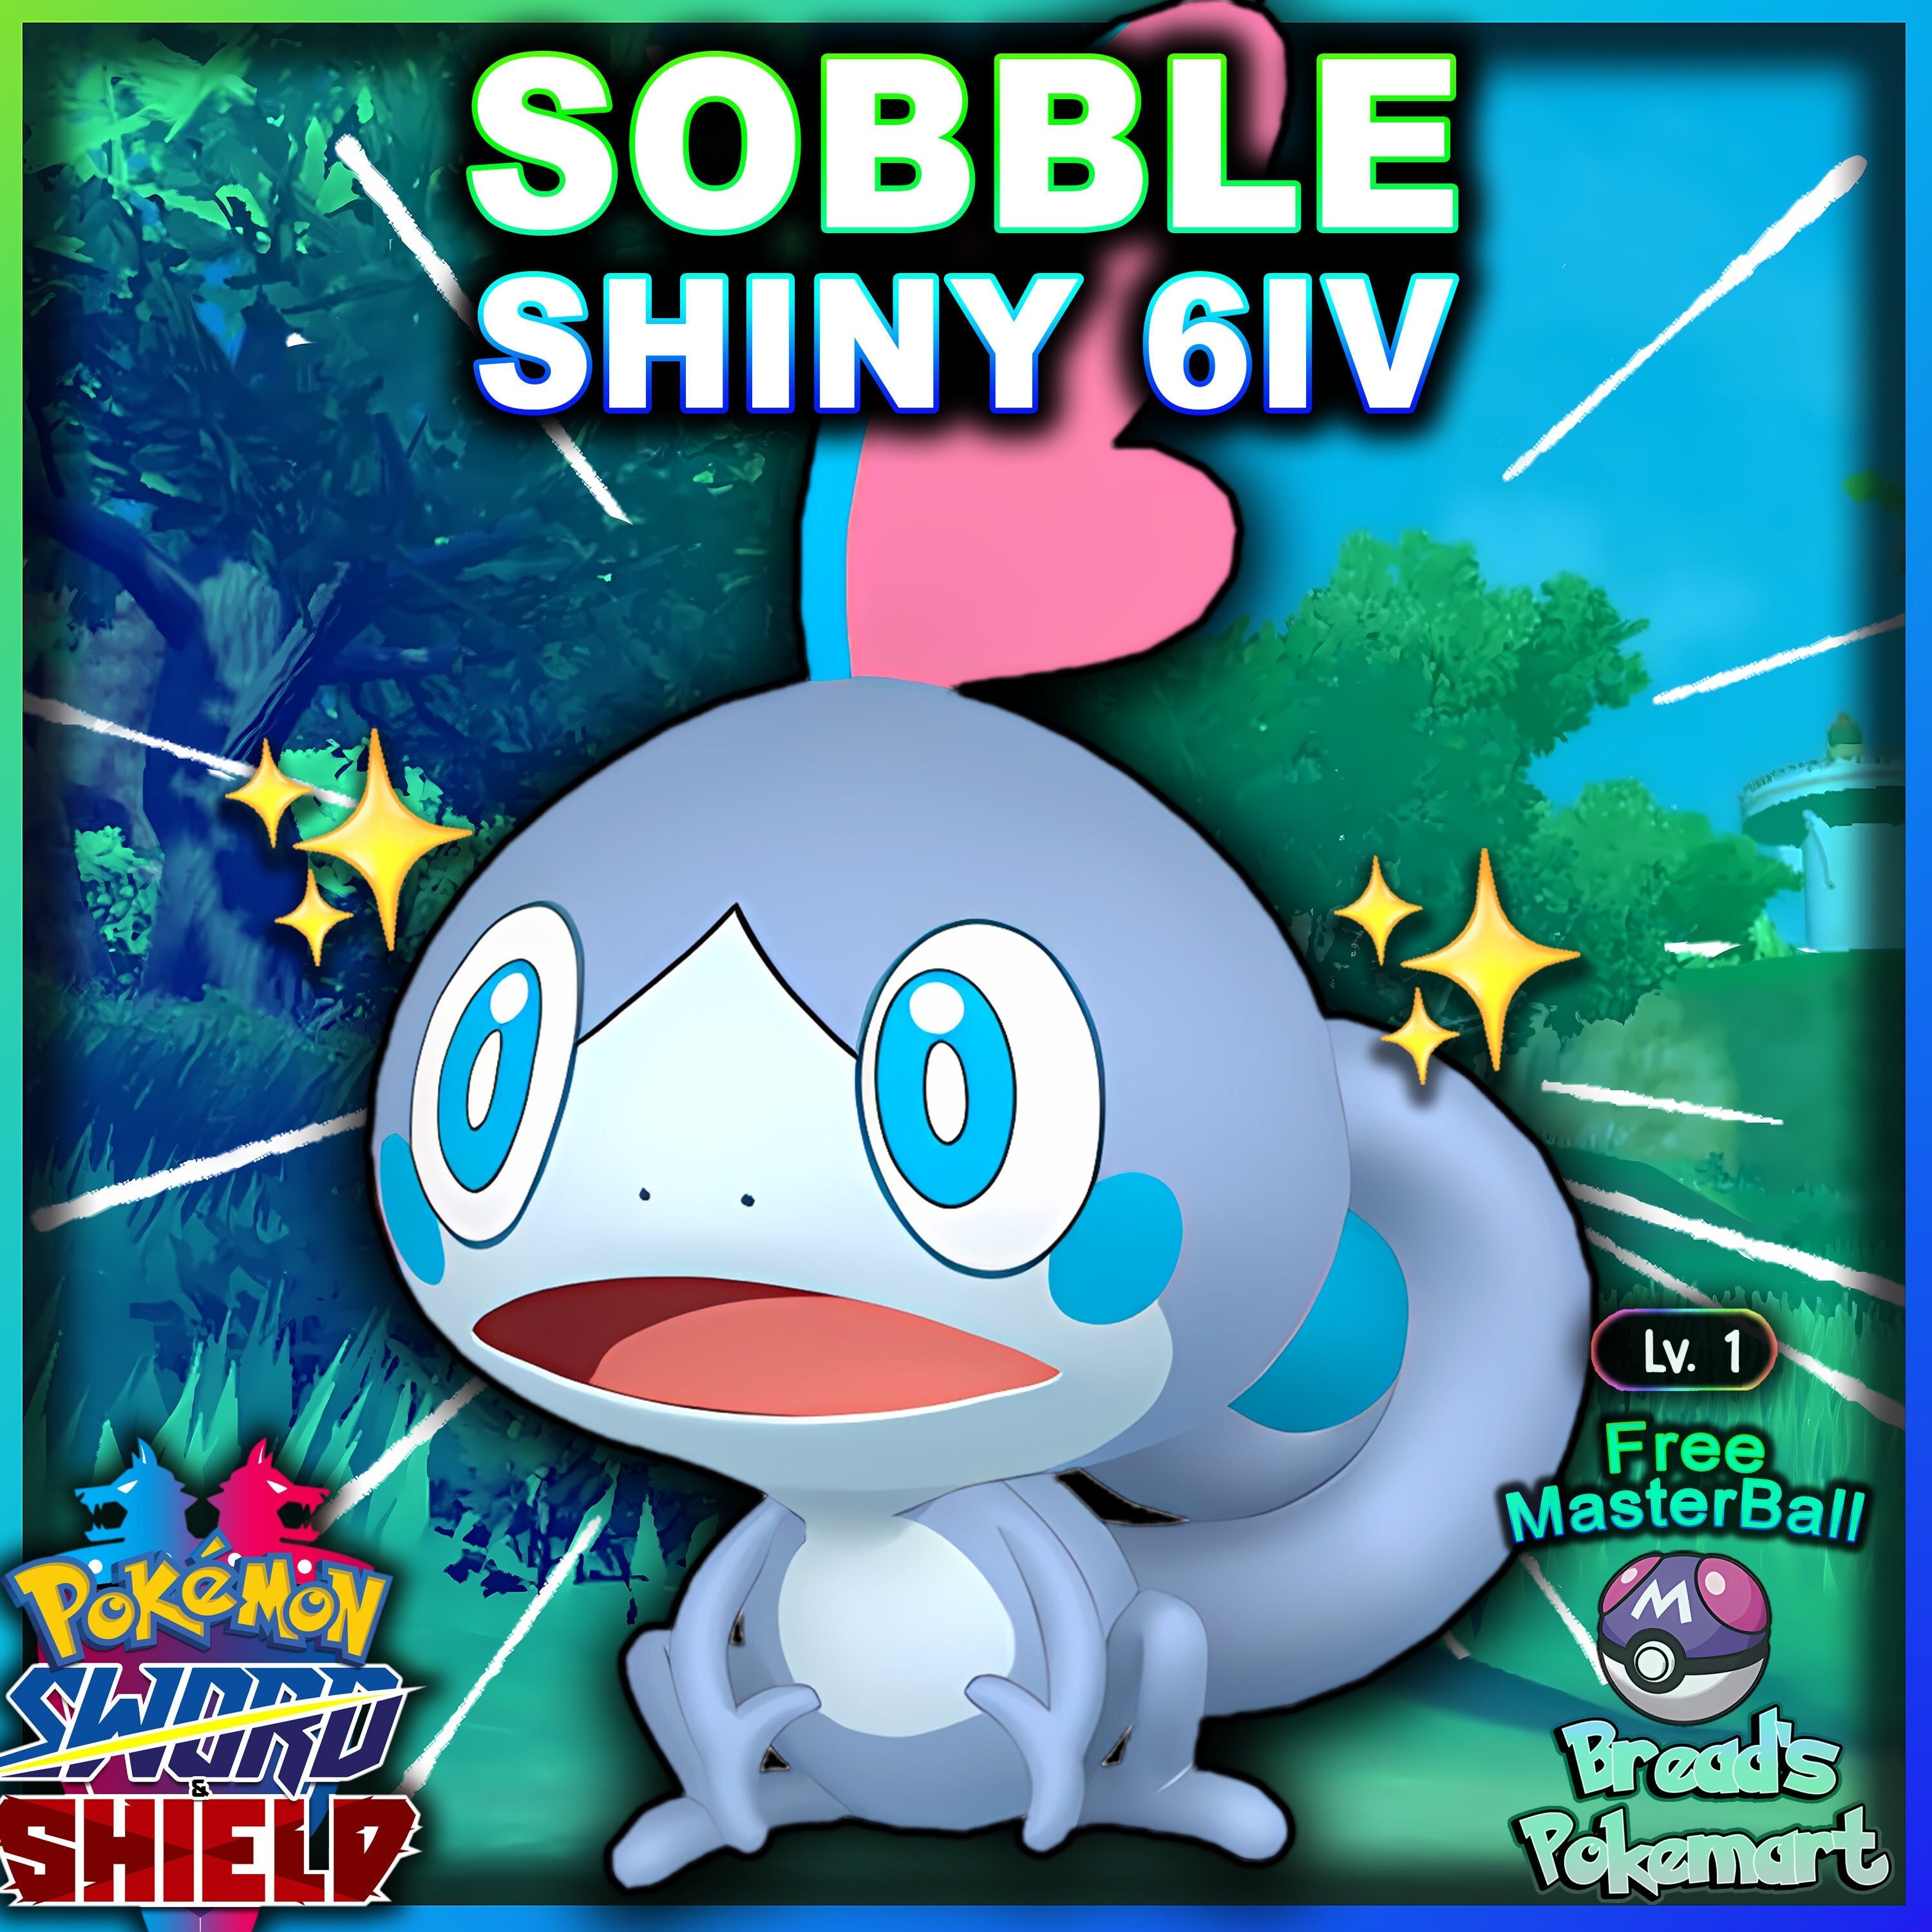 Is this Shiny Solgaleo legit? : r/PokemonSwordAndShield